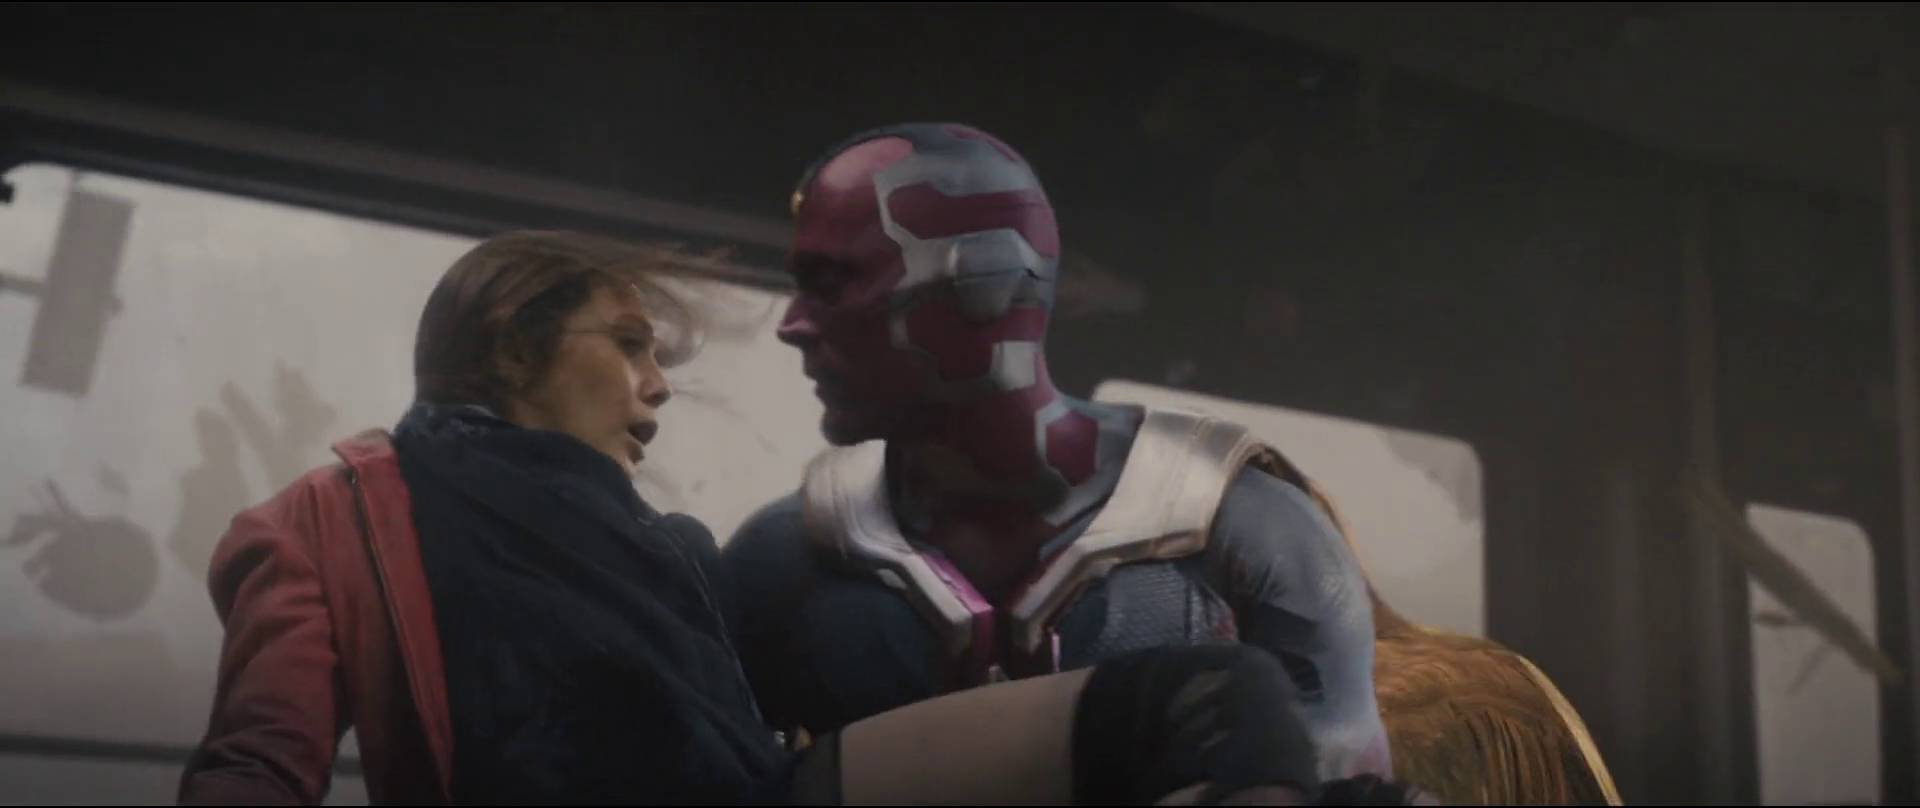 Imagen de El casting de Avengers 4 habría revelado un gran spoiler de Vision